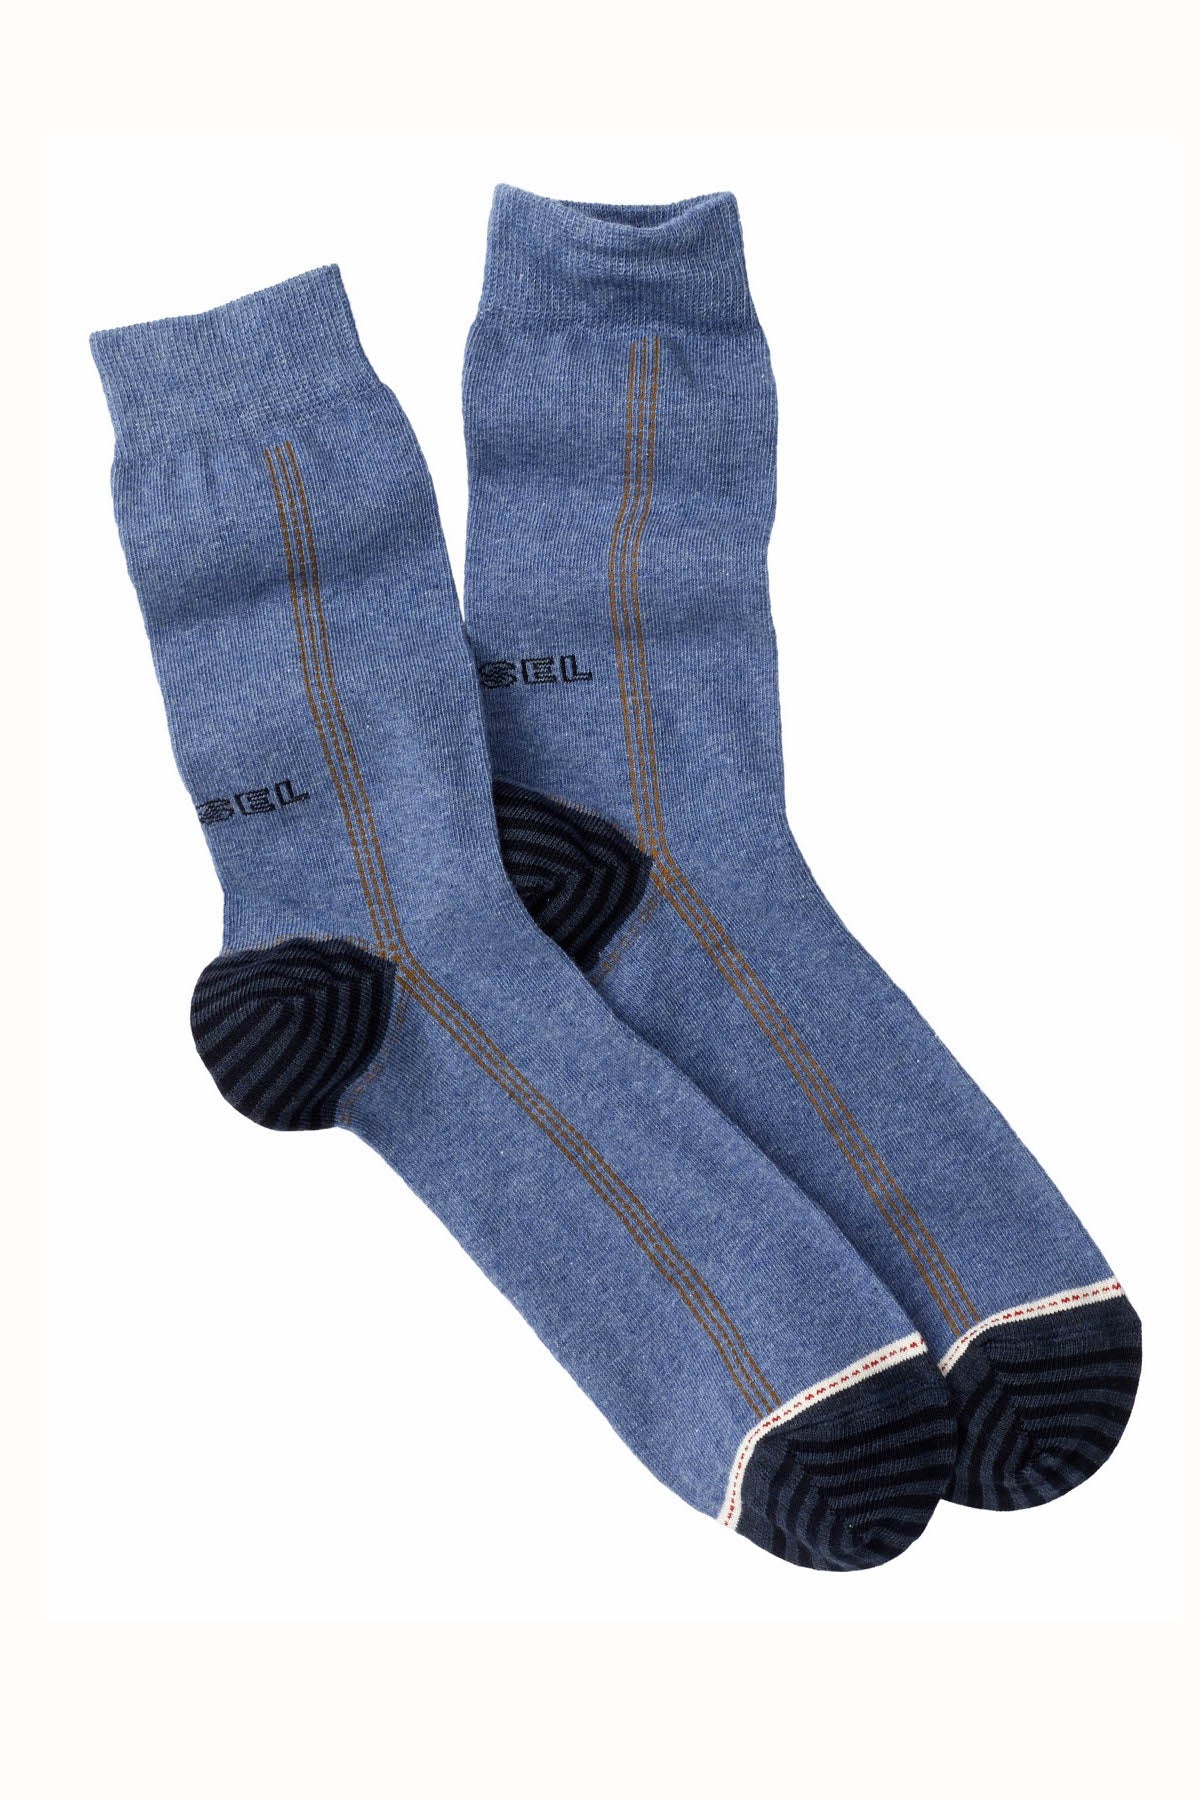 Diesel Blue Dark Denim Ray Socks